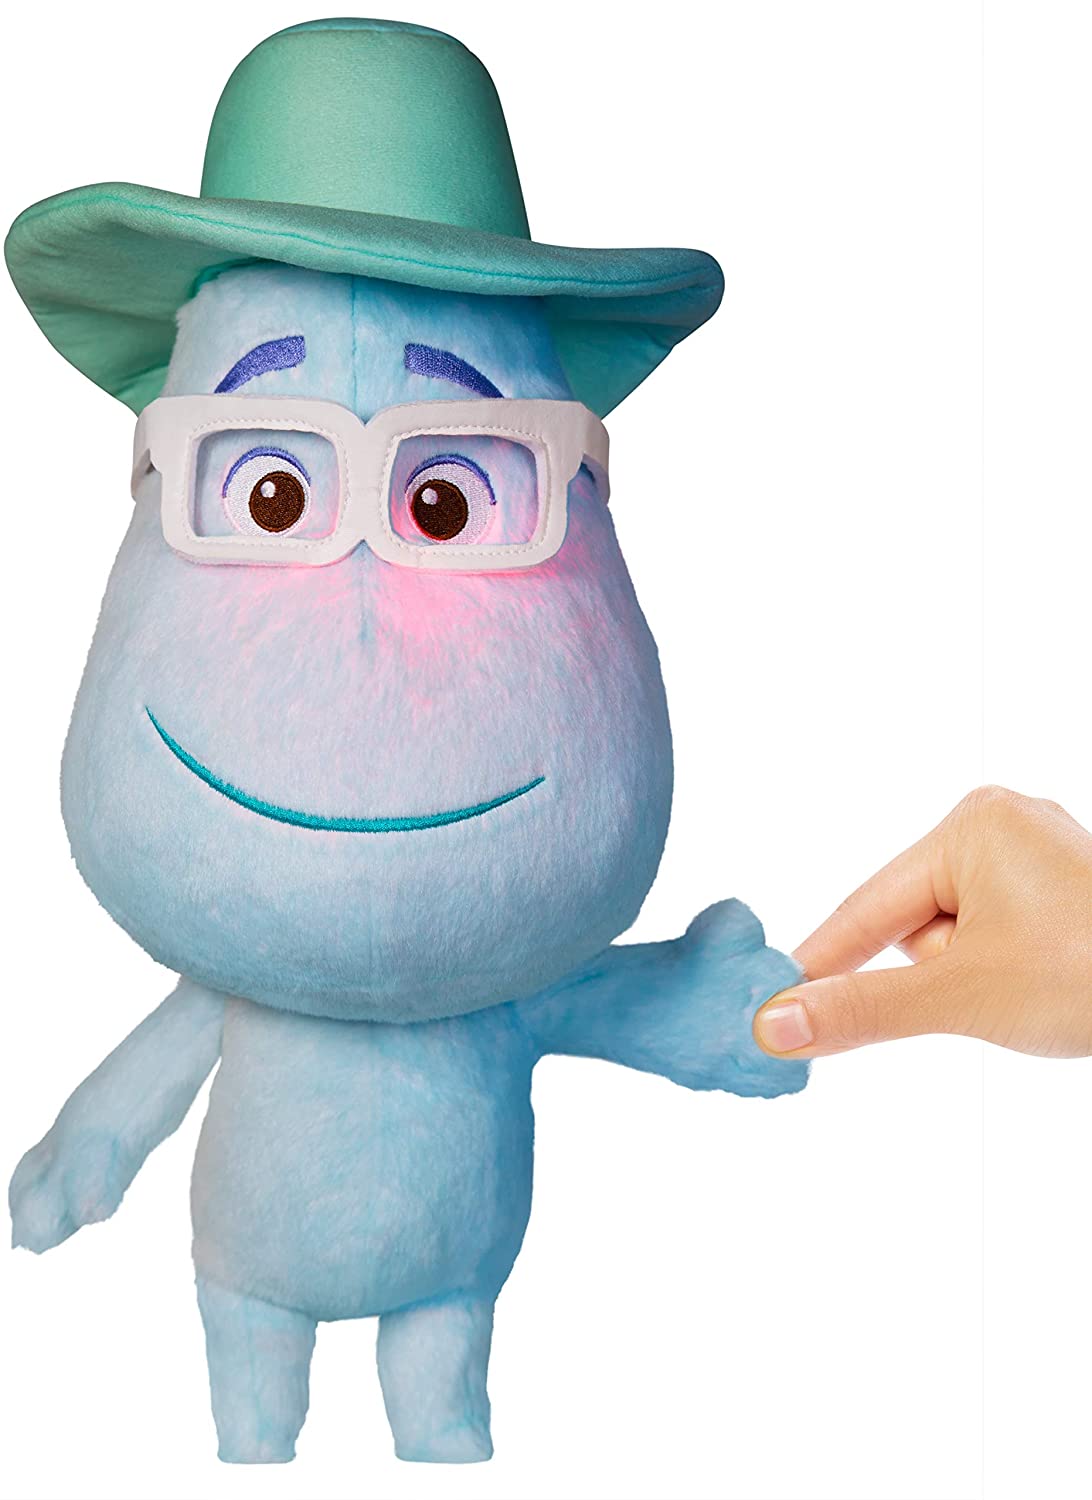 Diisney Pixar Soul toys